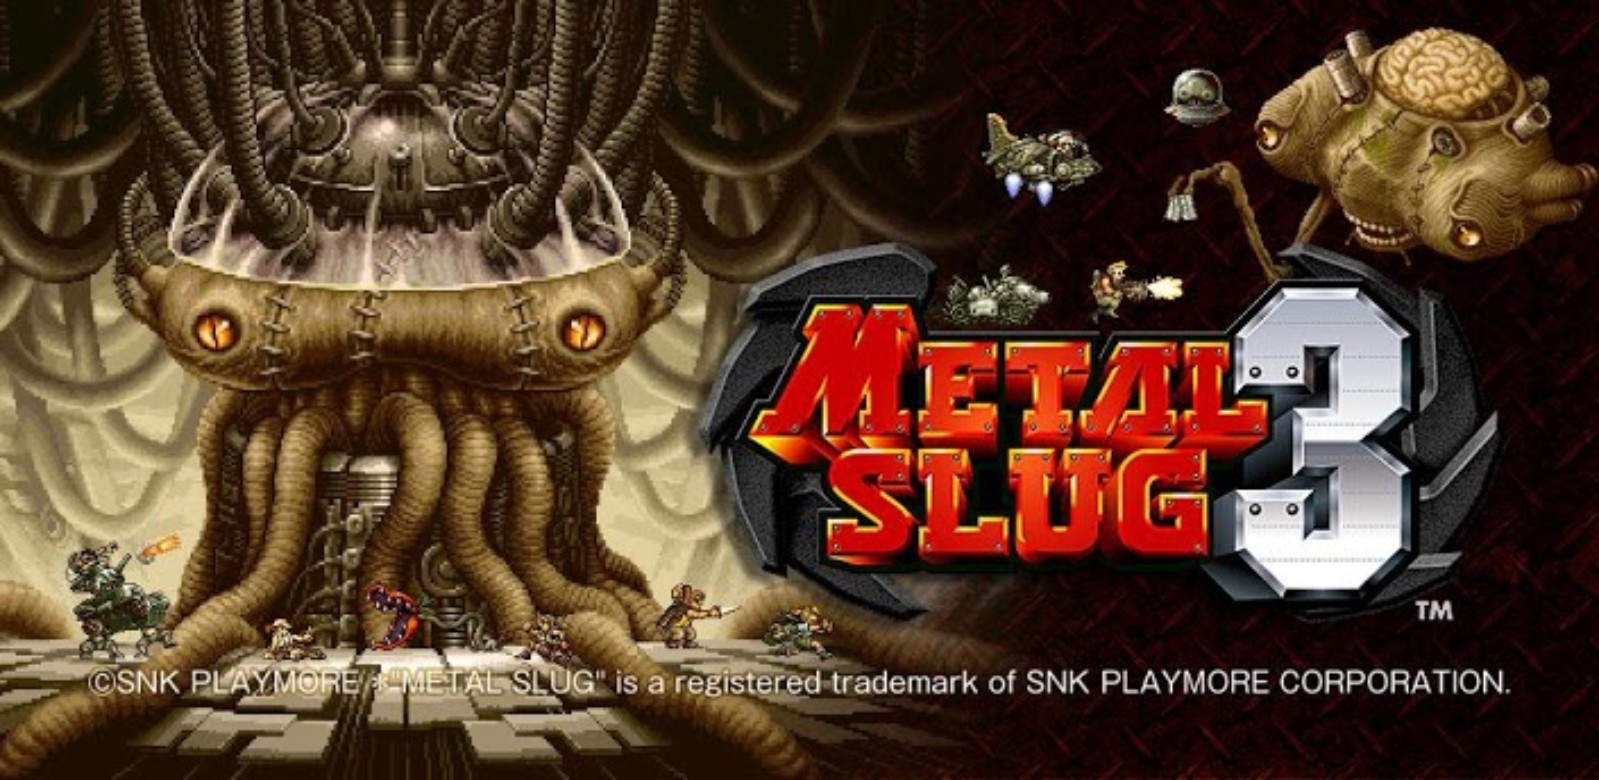 METAL SLUG 3 v1.6 Apk + SD Data | Android Games Download